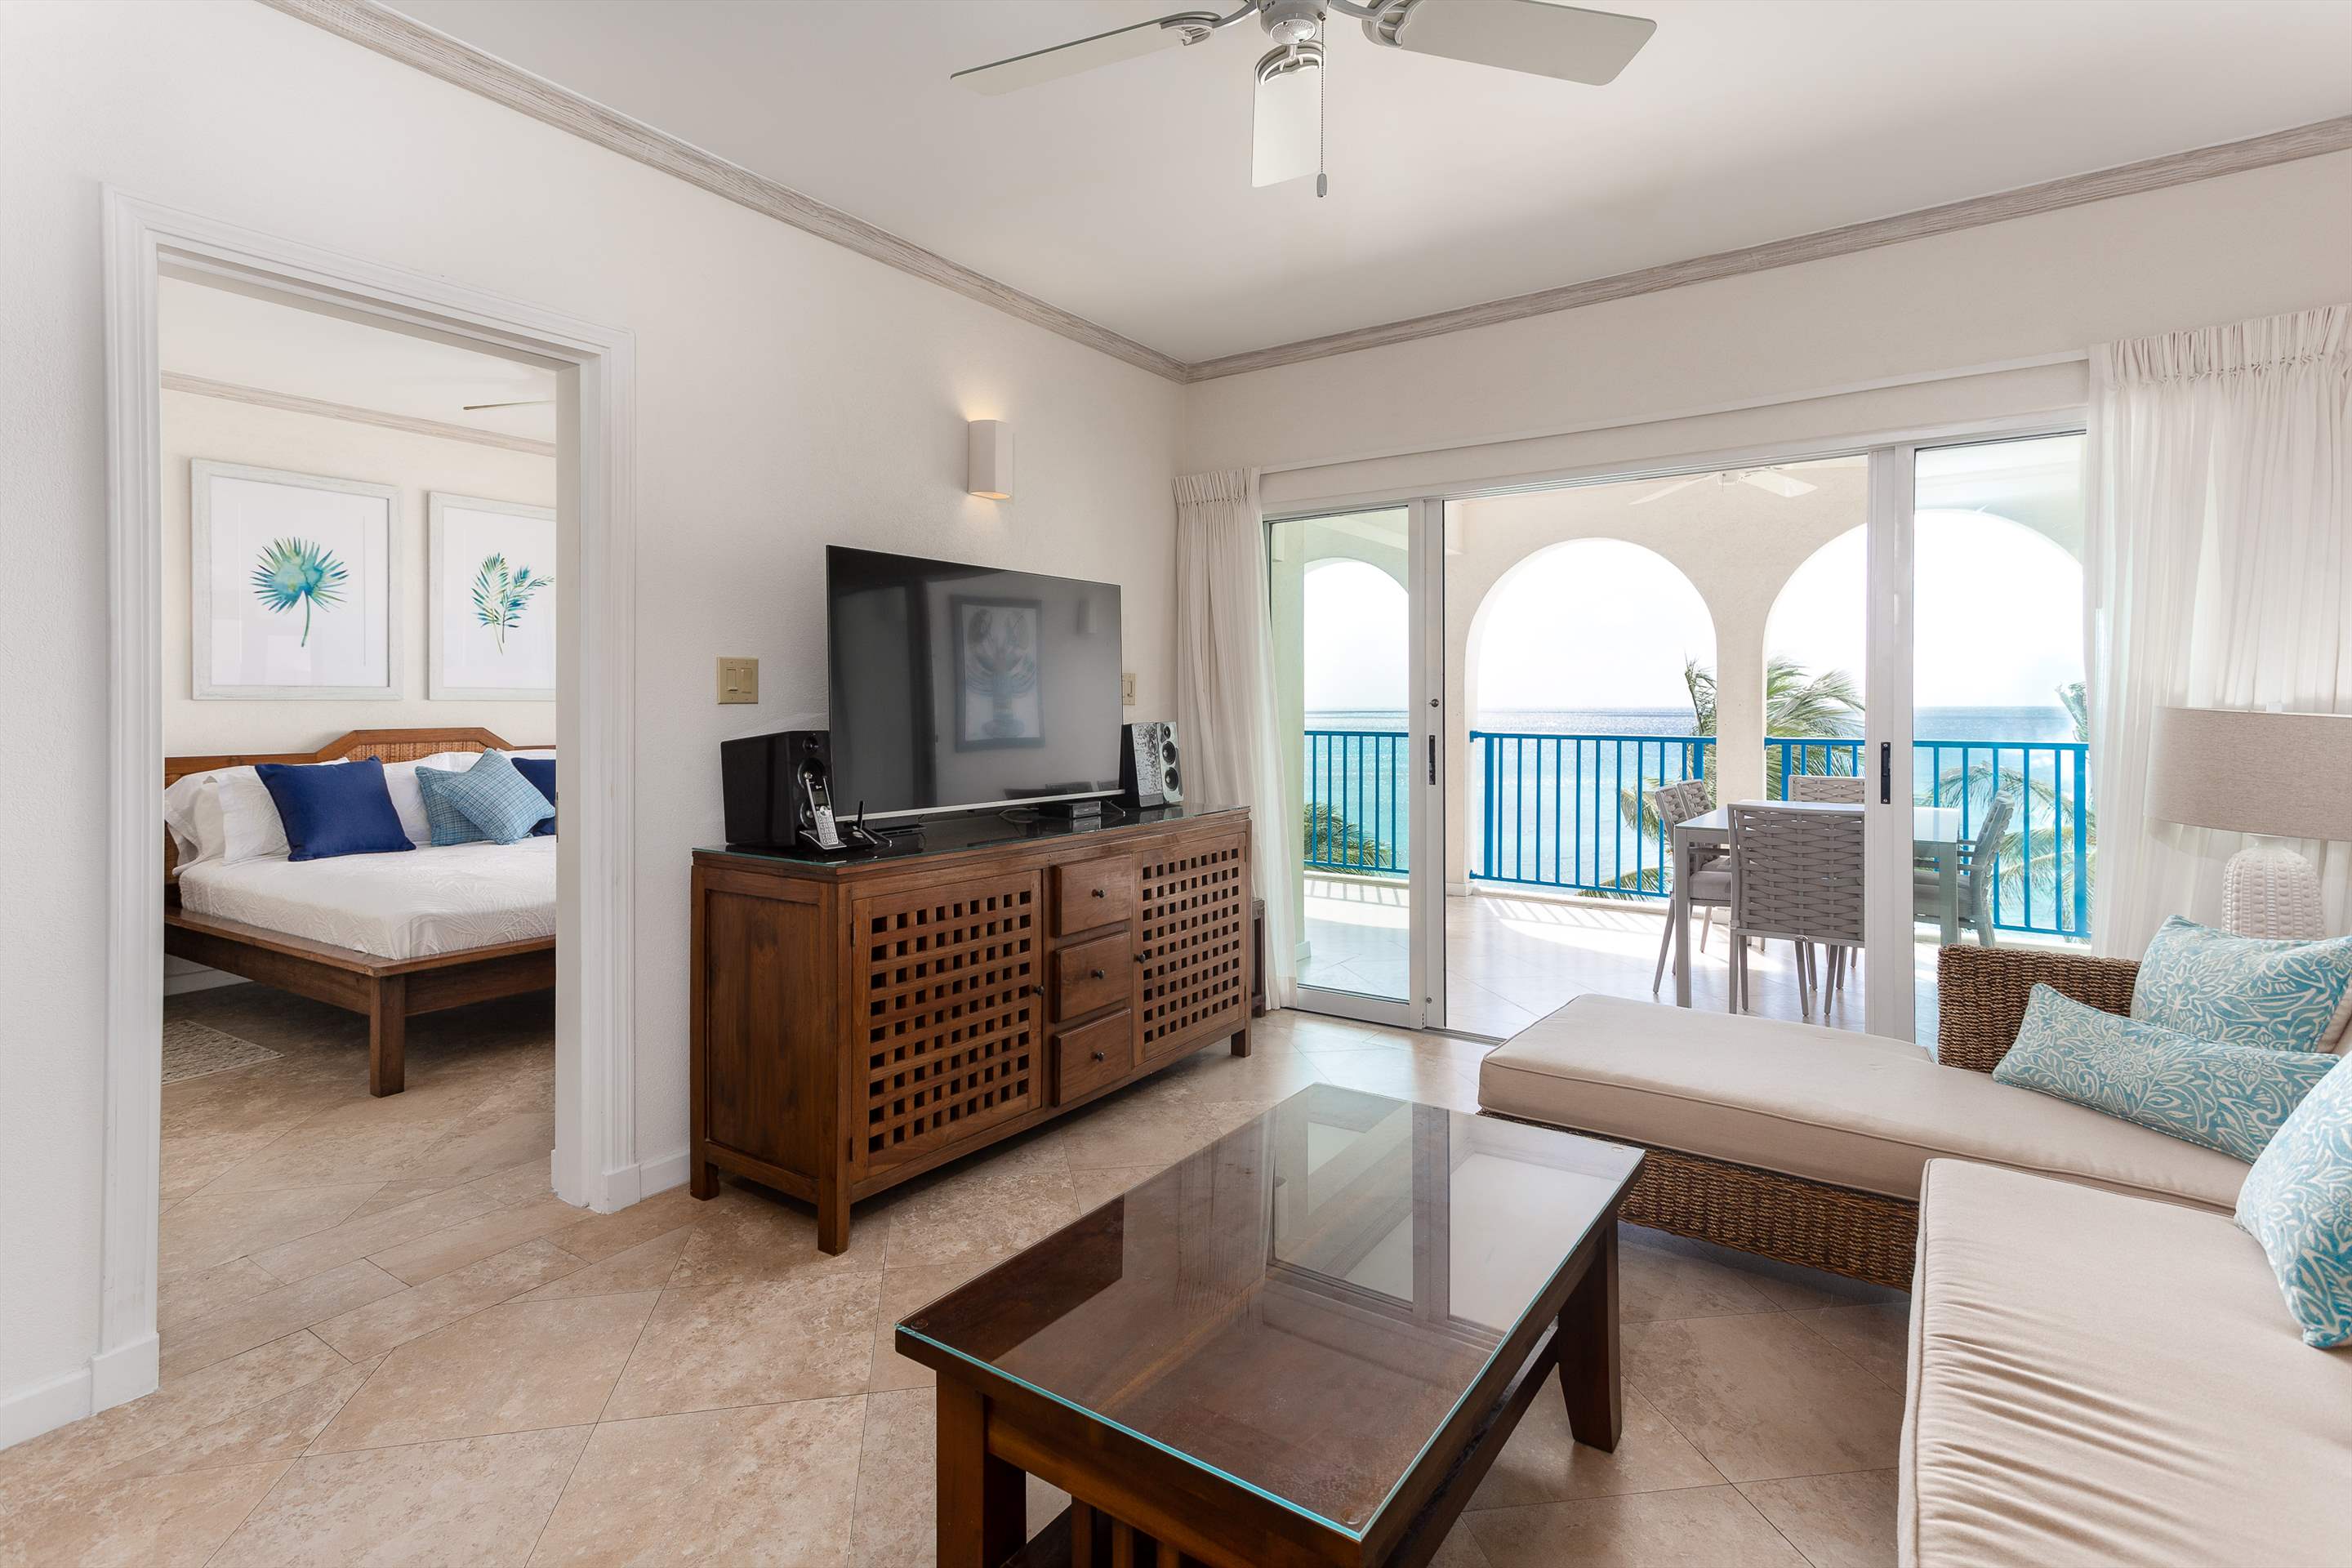 Maxwell Beach Villas 402, 2 bedroom, 2 bedroom villa in St. Lawrence Gap & South Coast, Barbados Photo #4